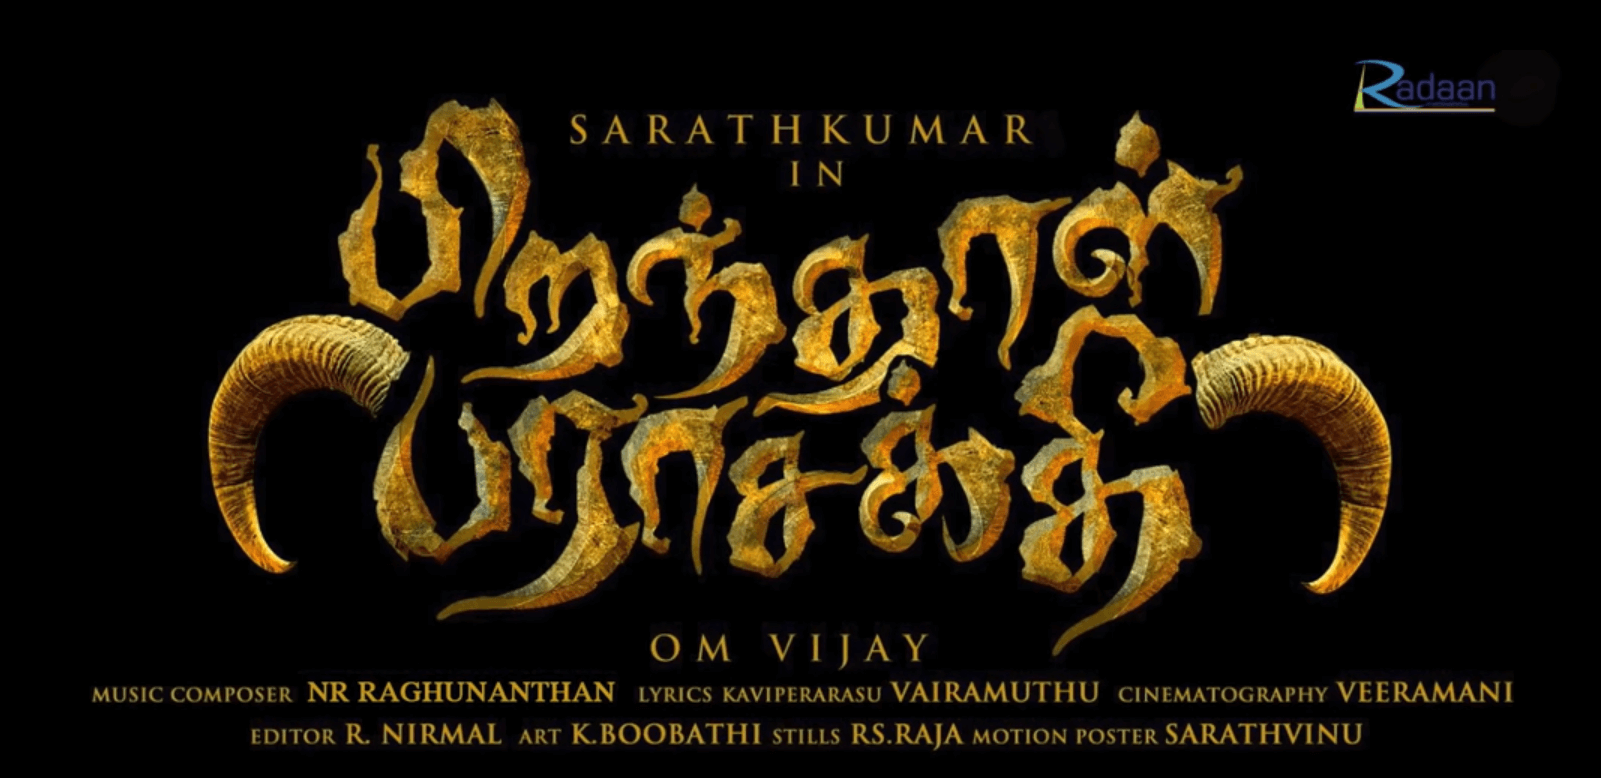 Peranthal Parasakthi Tamil Movie